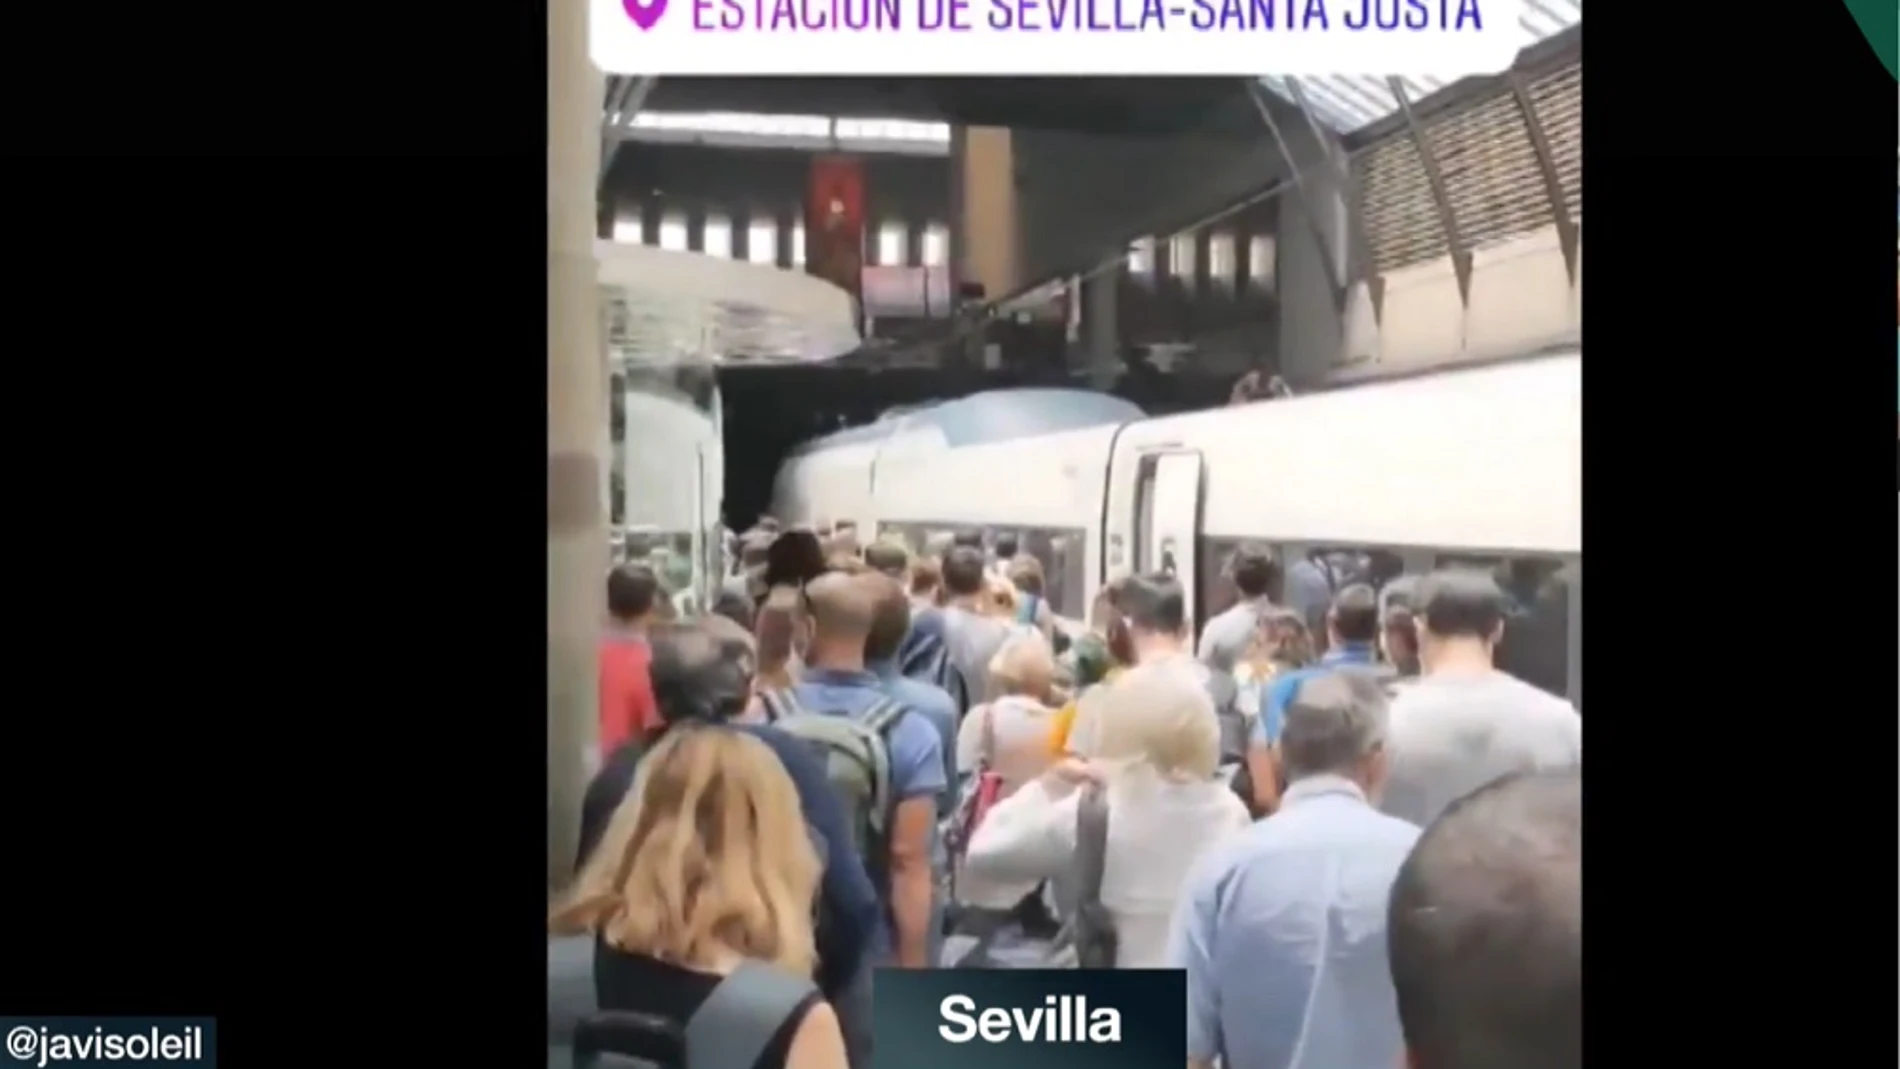 Imagen de aglomeraciones en la estación de tren de Santa Justa